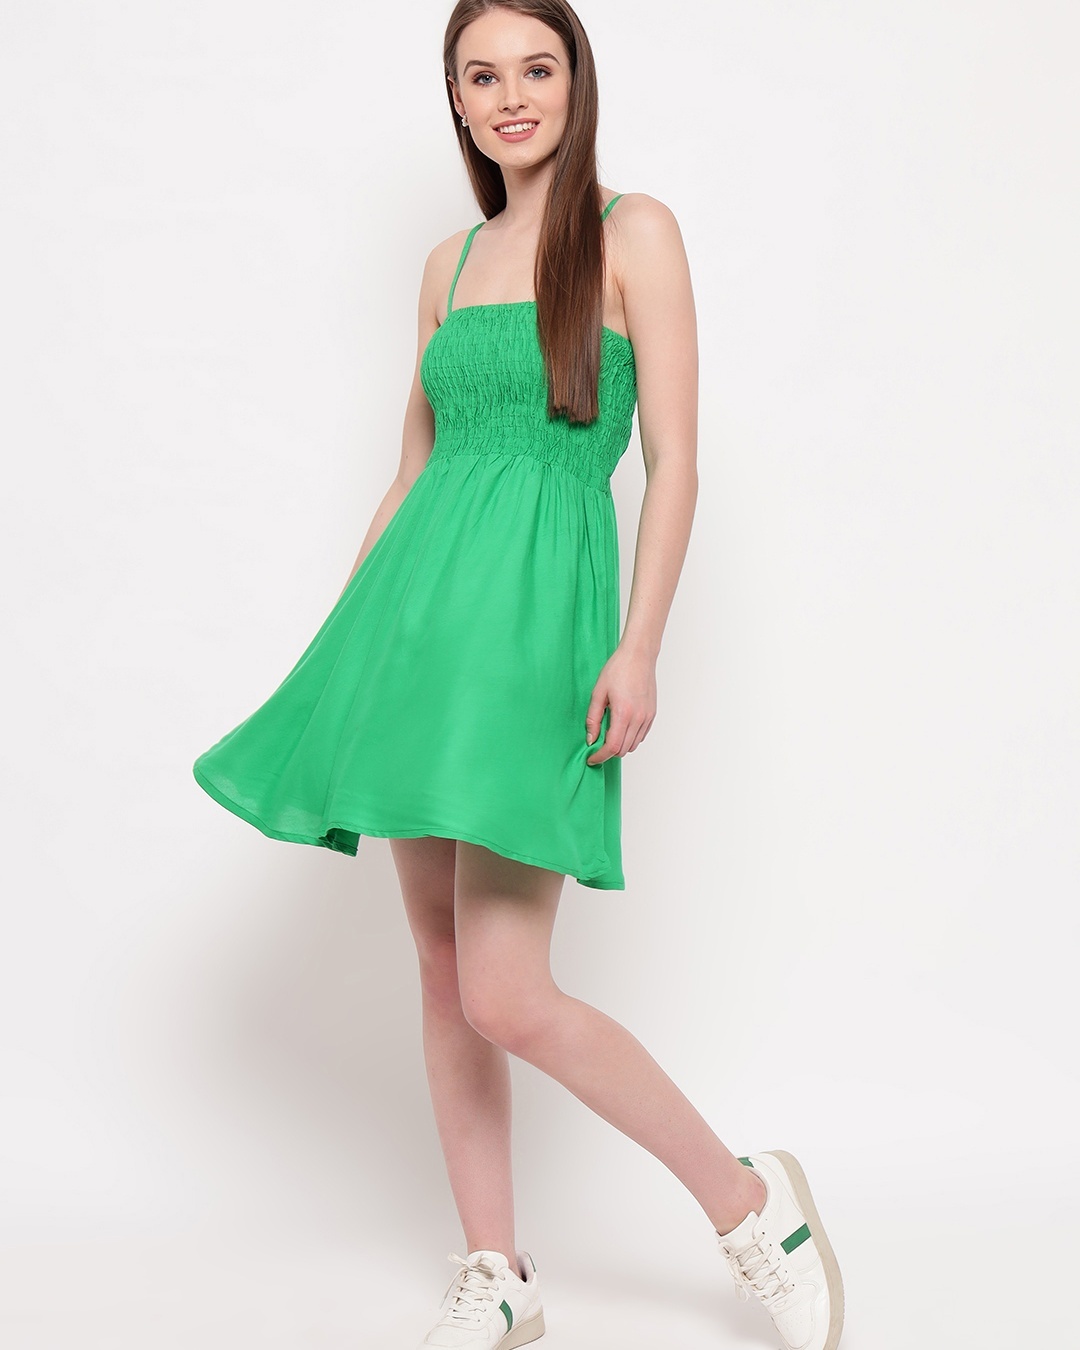 Buy Women's Green Short Dress for Women Green Online at Bewakoof